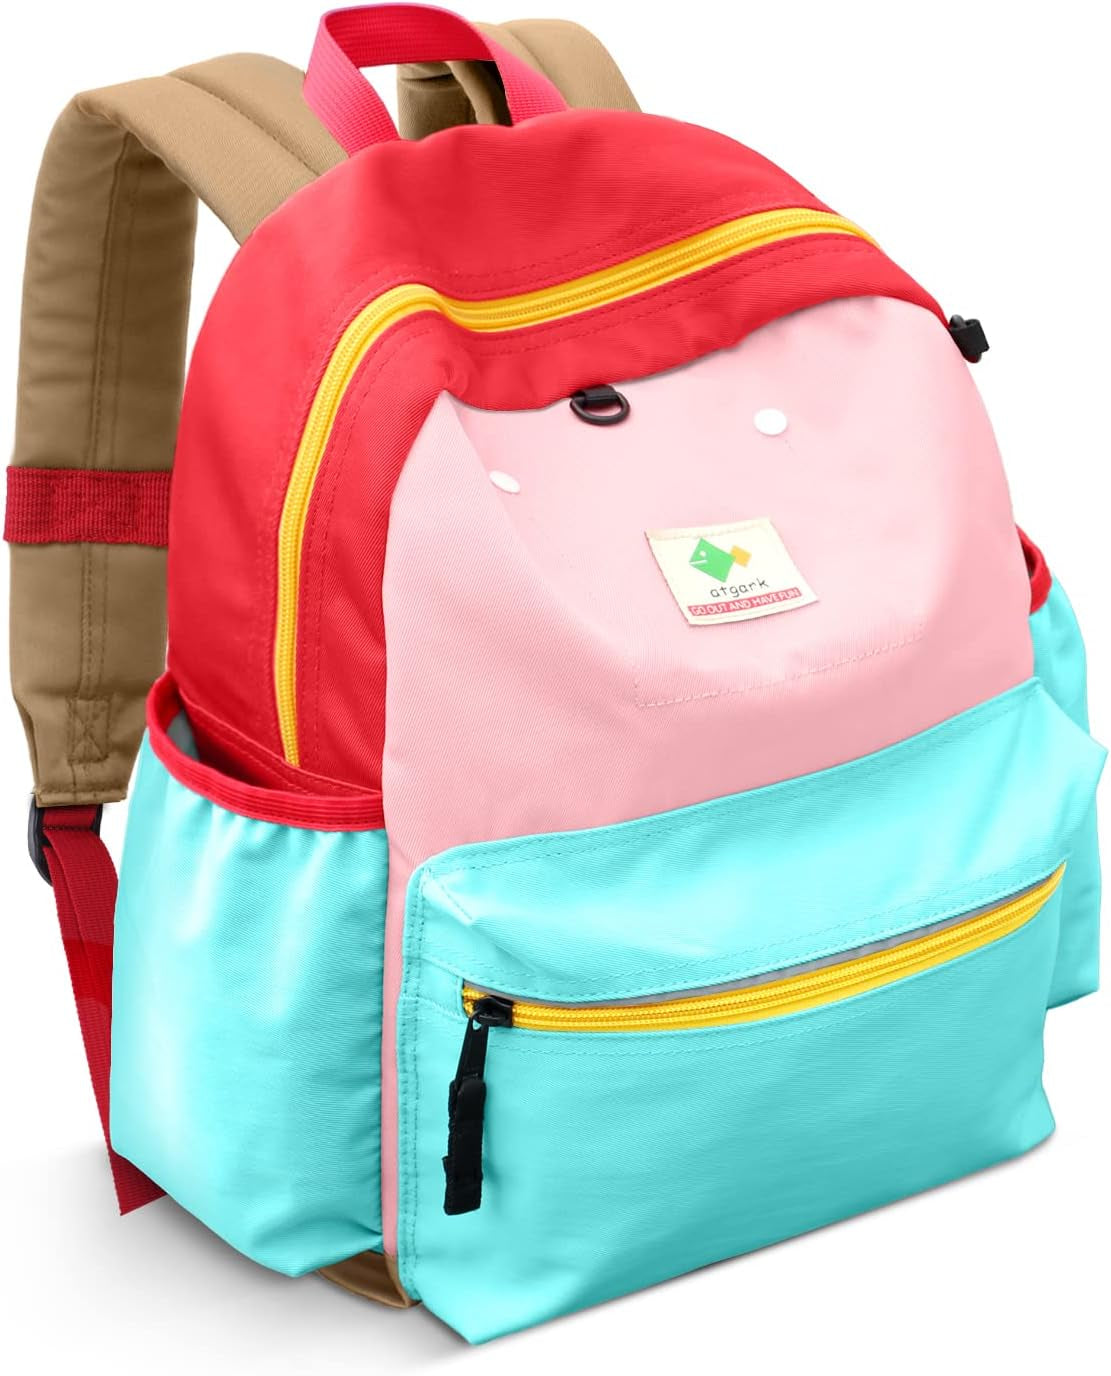 Preschool Toddler Backpack for Boys Girls, Toddler School Mini Backpack for School & Travel, Small Kids Child Backpacks, Preschool Kindergarten Elementary Toddler Bag, 11" H, for Kids 2-4, Small